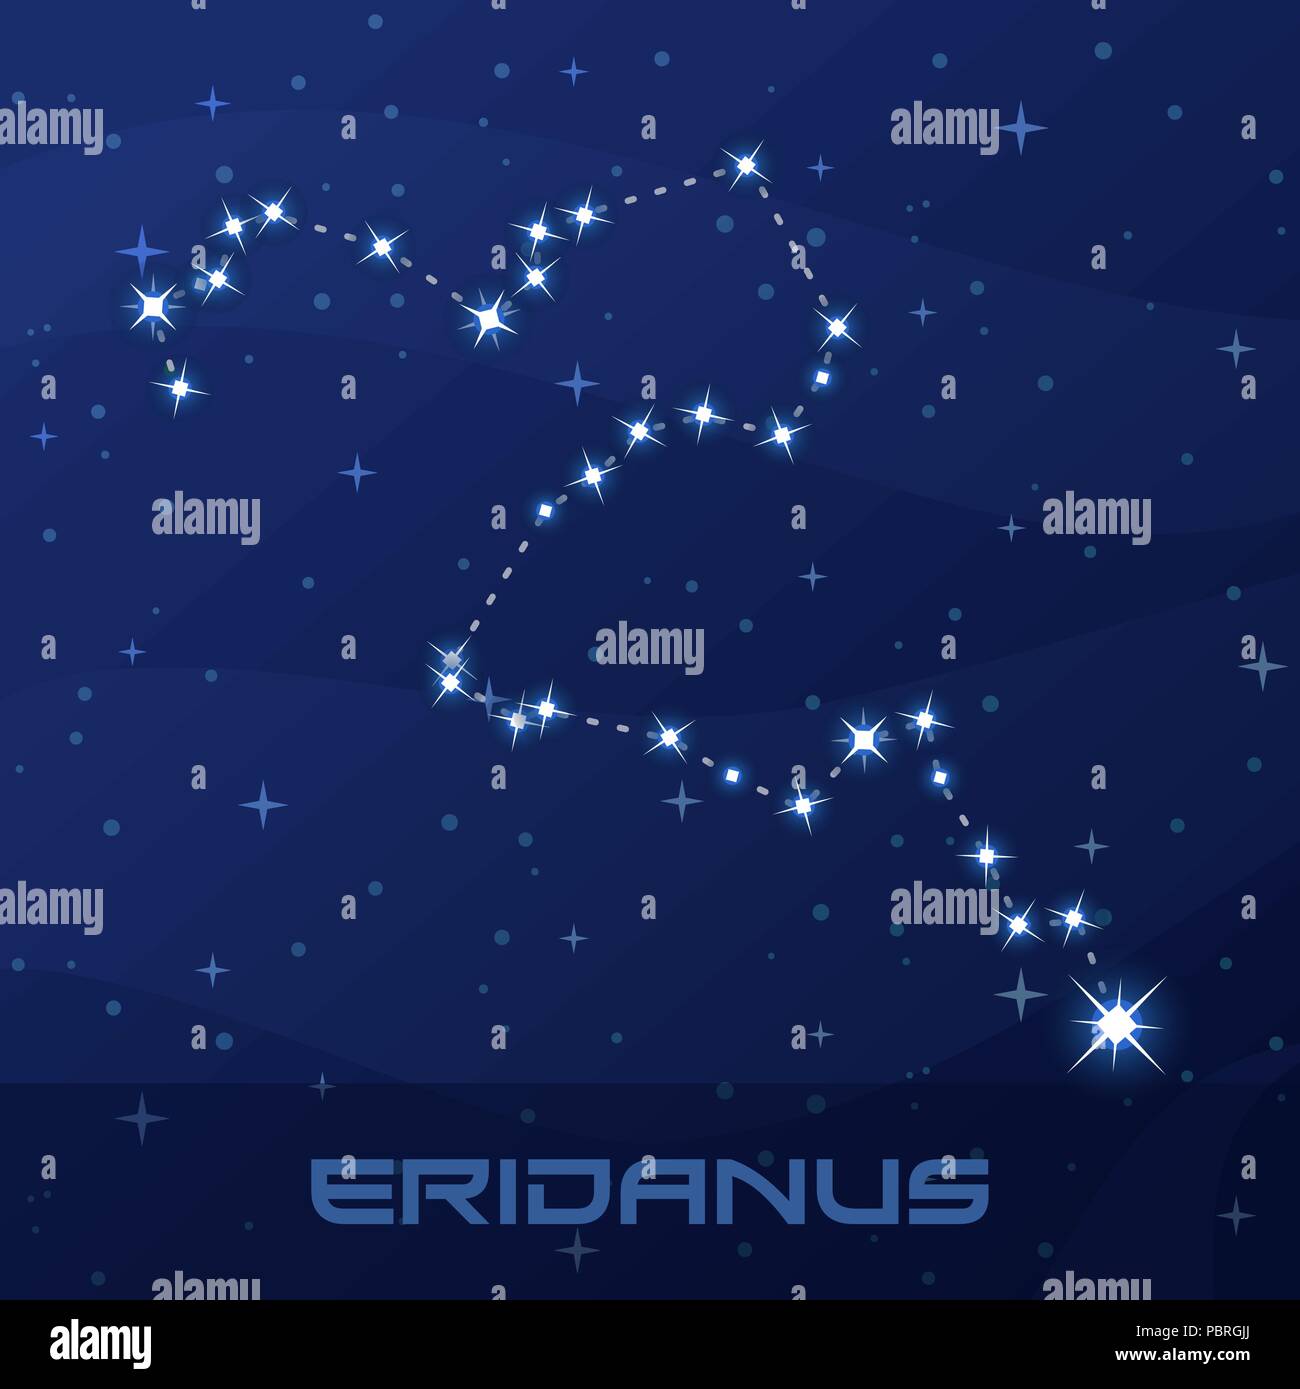 Constellation de l'Éridan, rivière, nuit sky Illustration de Vecteur